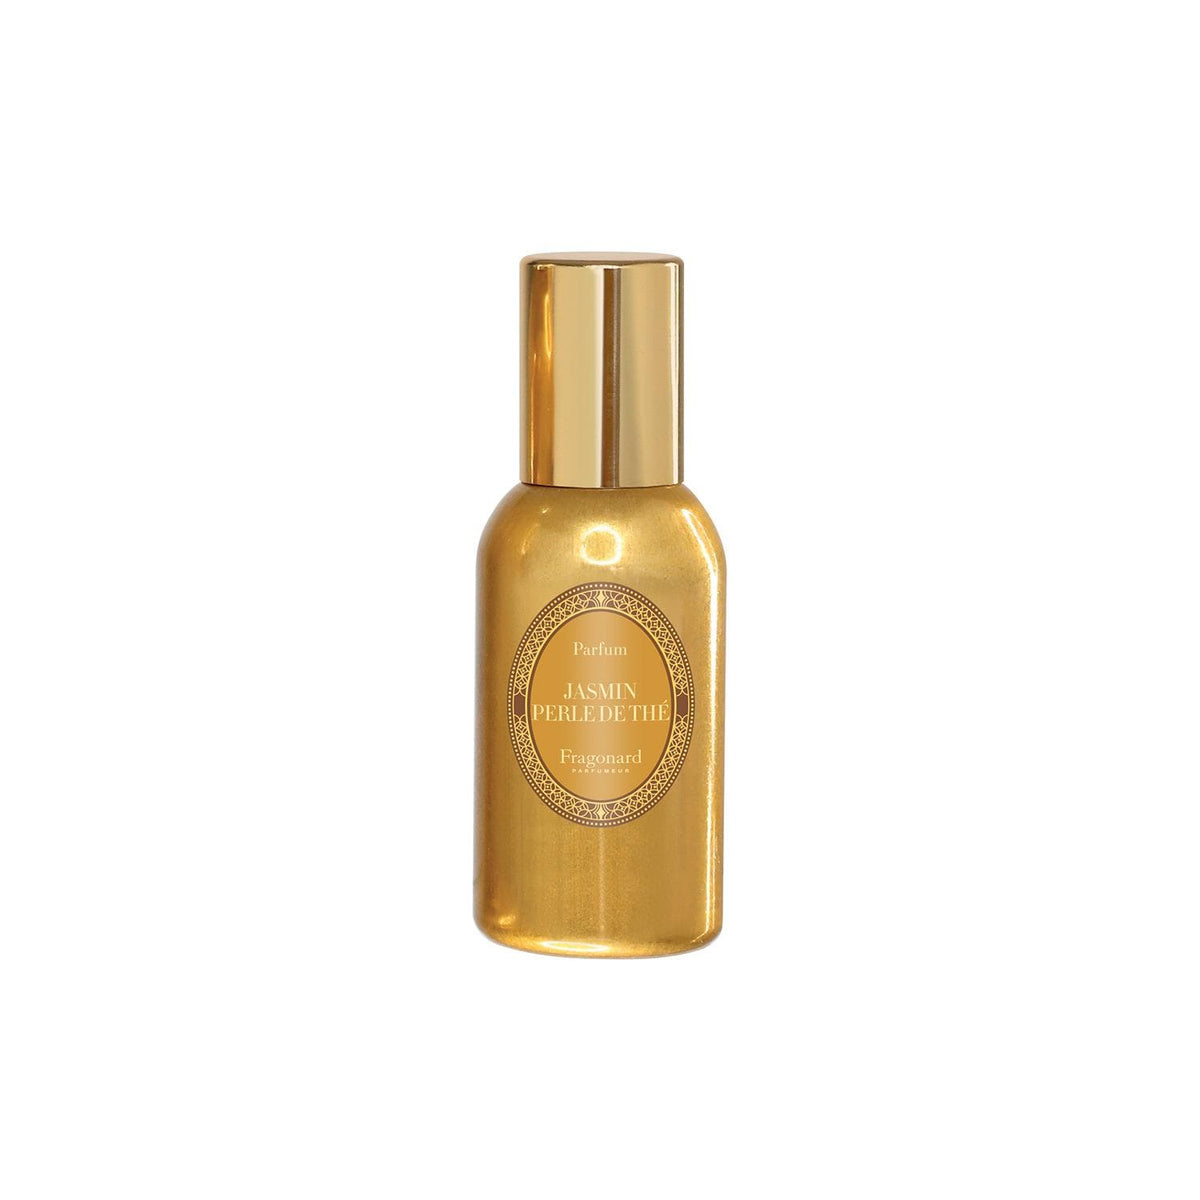 Fragonard Jasmin Perle de The Gold Bottle Parfum 30 ml-Fragonard Parfumeur-Oak Manor Fragrances